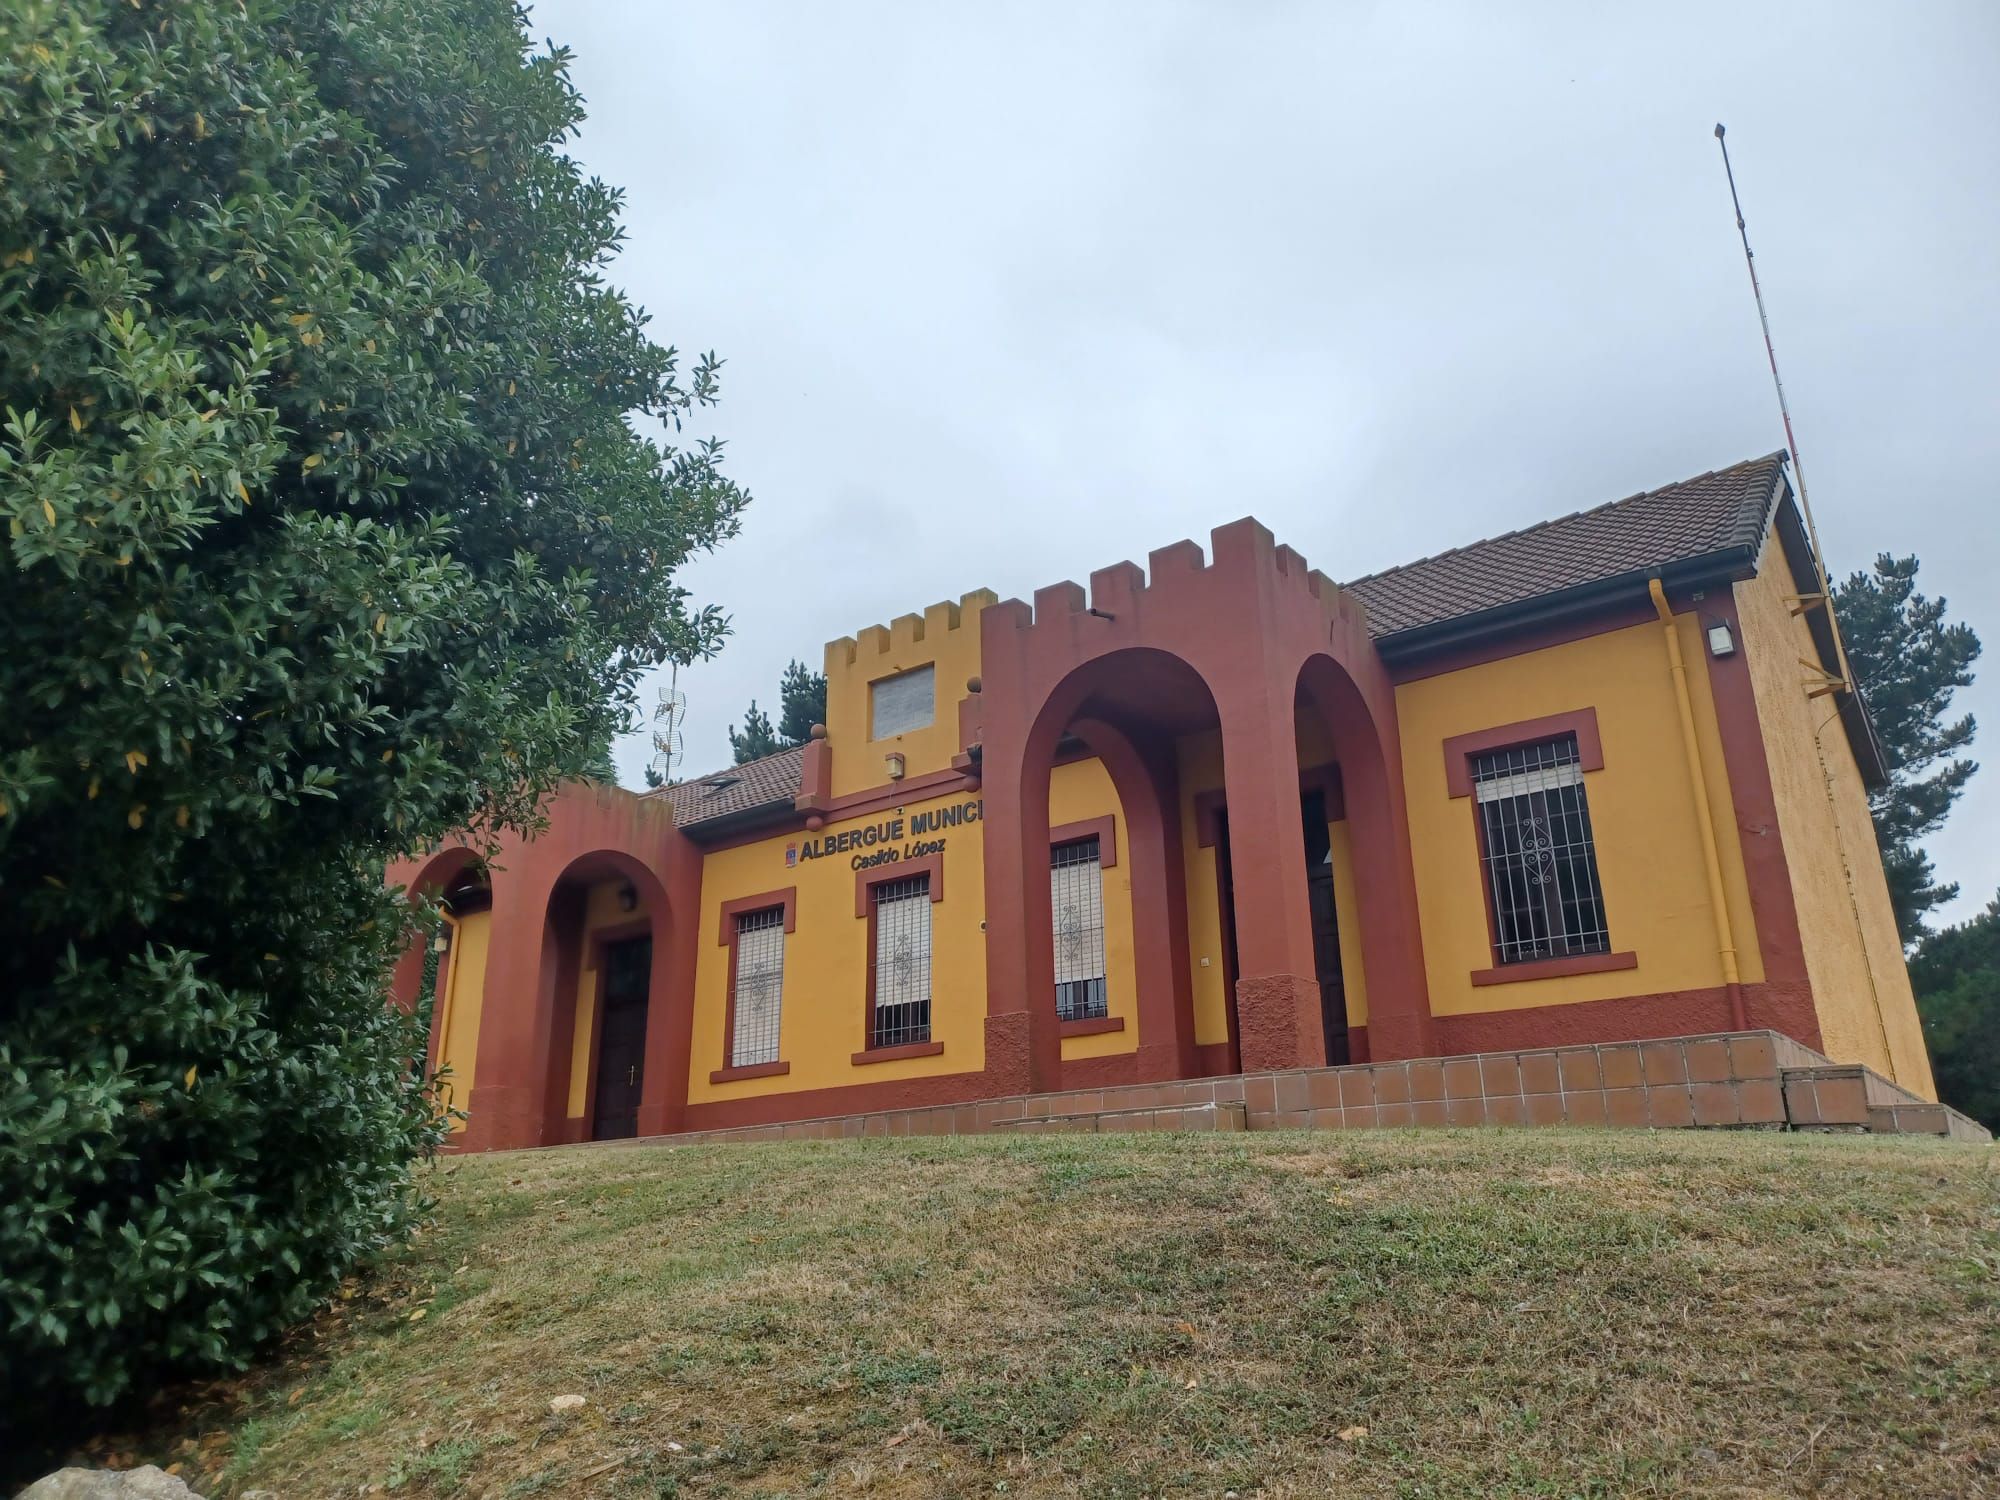 La escuela indiana de Robledo, así es el emblemático edificio de Llanera de singular arquitectura historicista